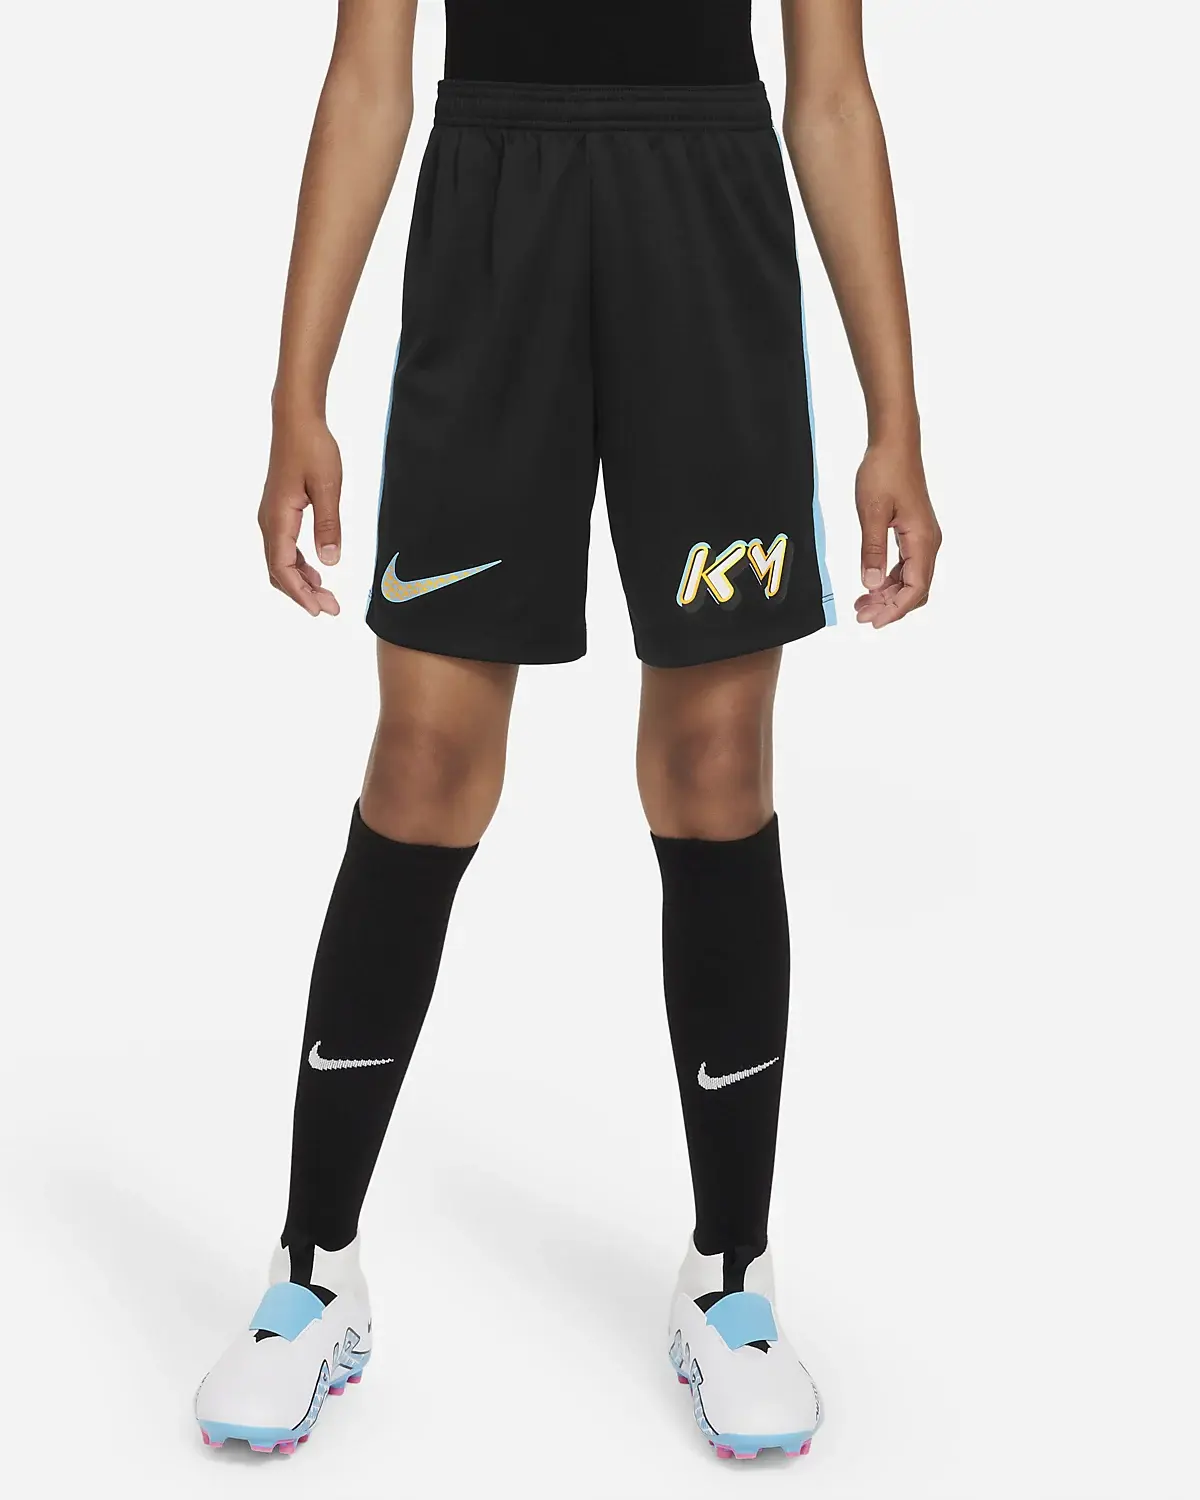 Nike KM Dri-FIT. 1